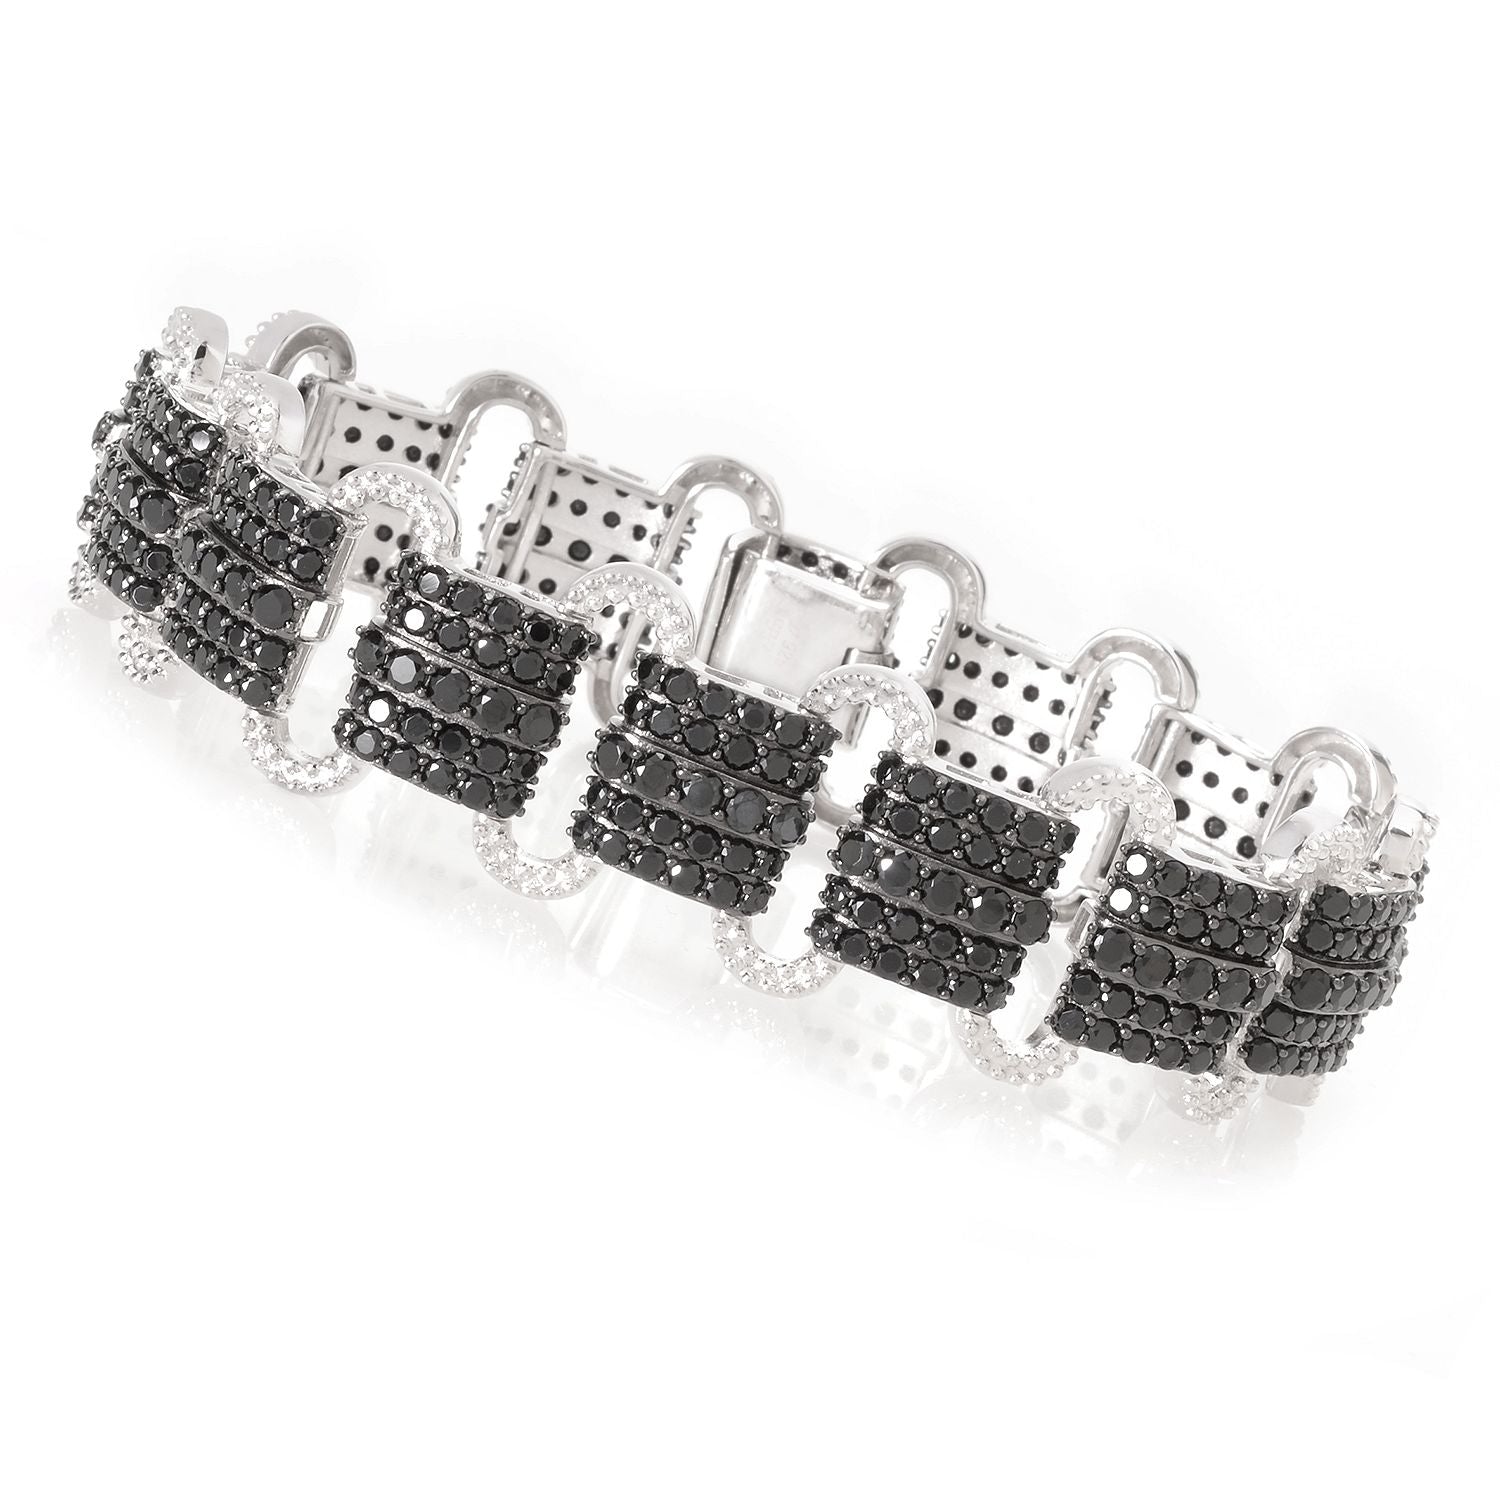 Pinctore Sterling Silver 12 5/8ct Black Spinel Link Bracelet, 7.25"